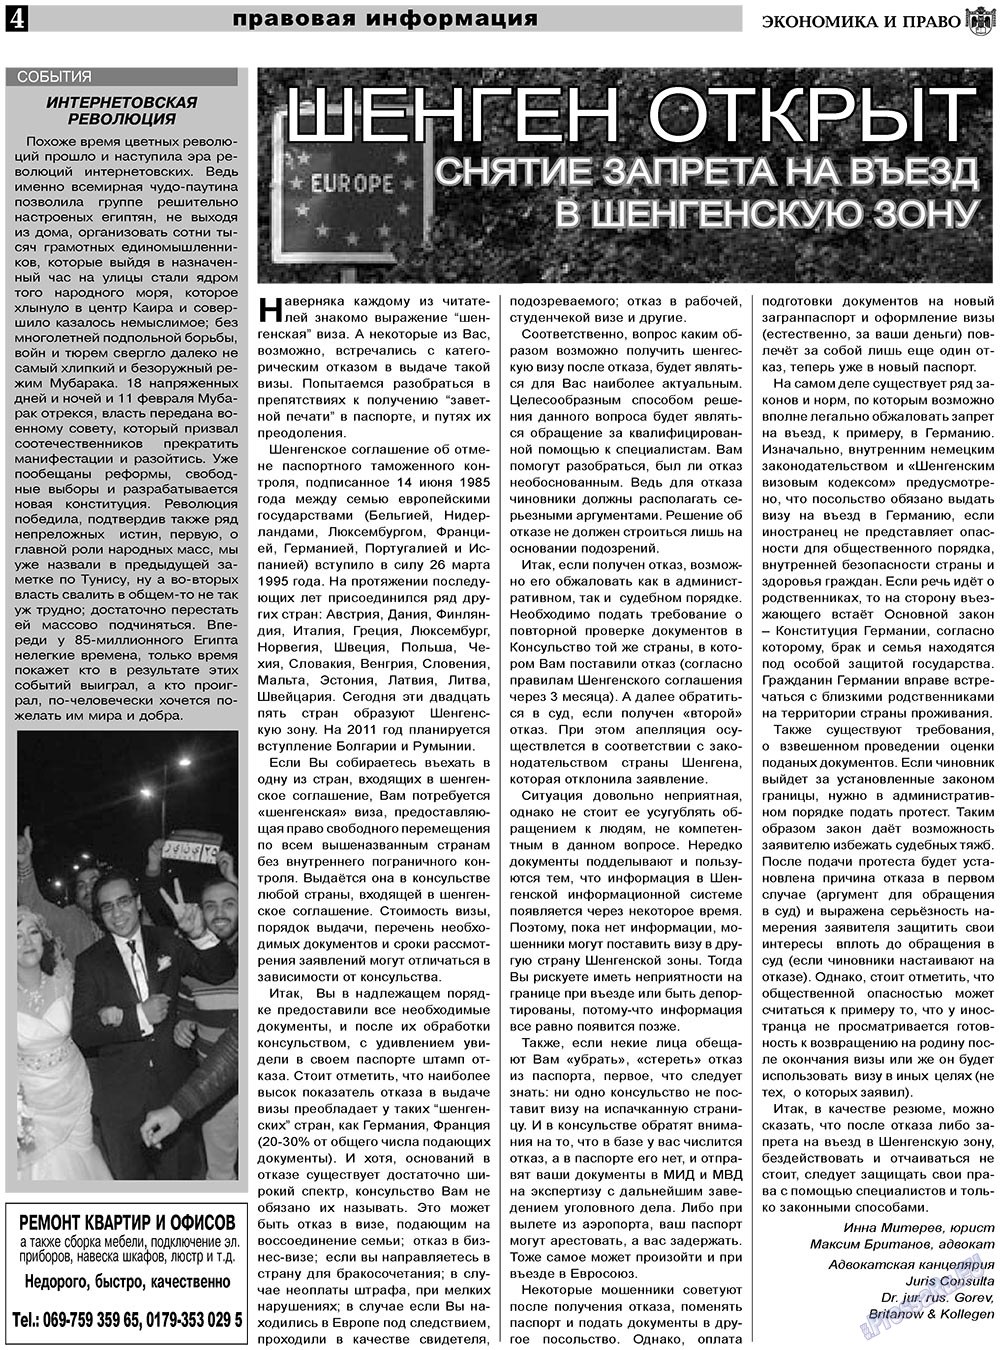 Экономика и право, газета. 2011 №3 стр.4